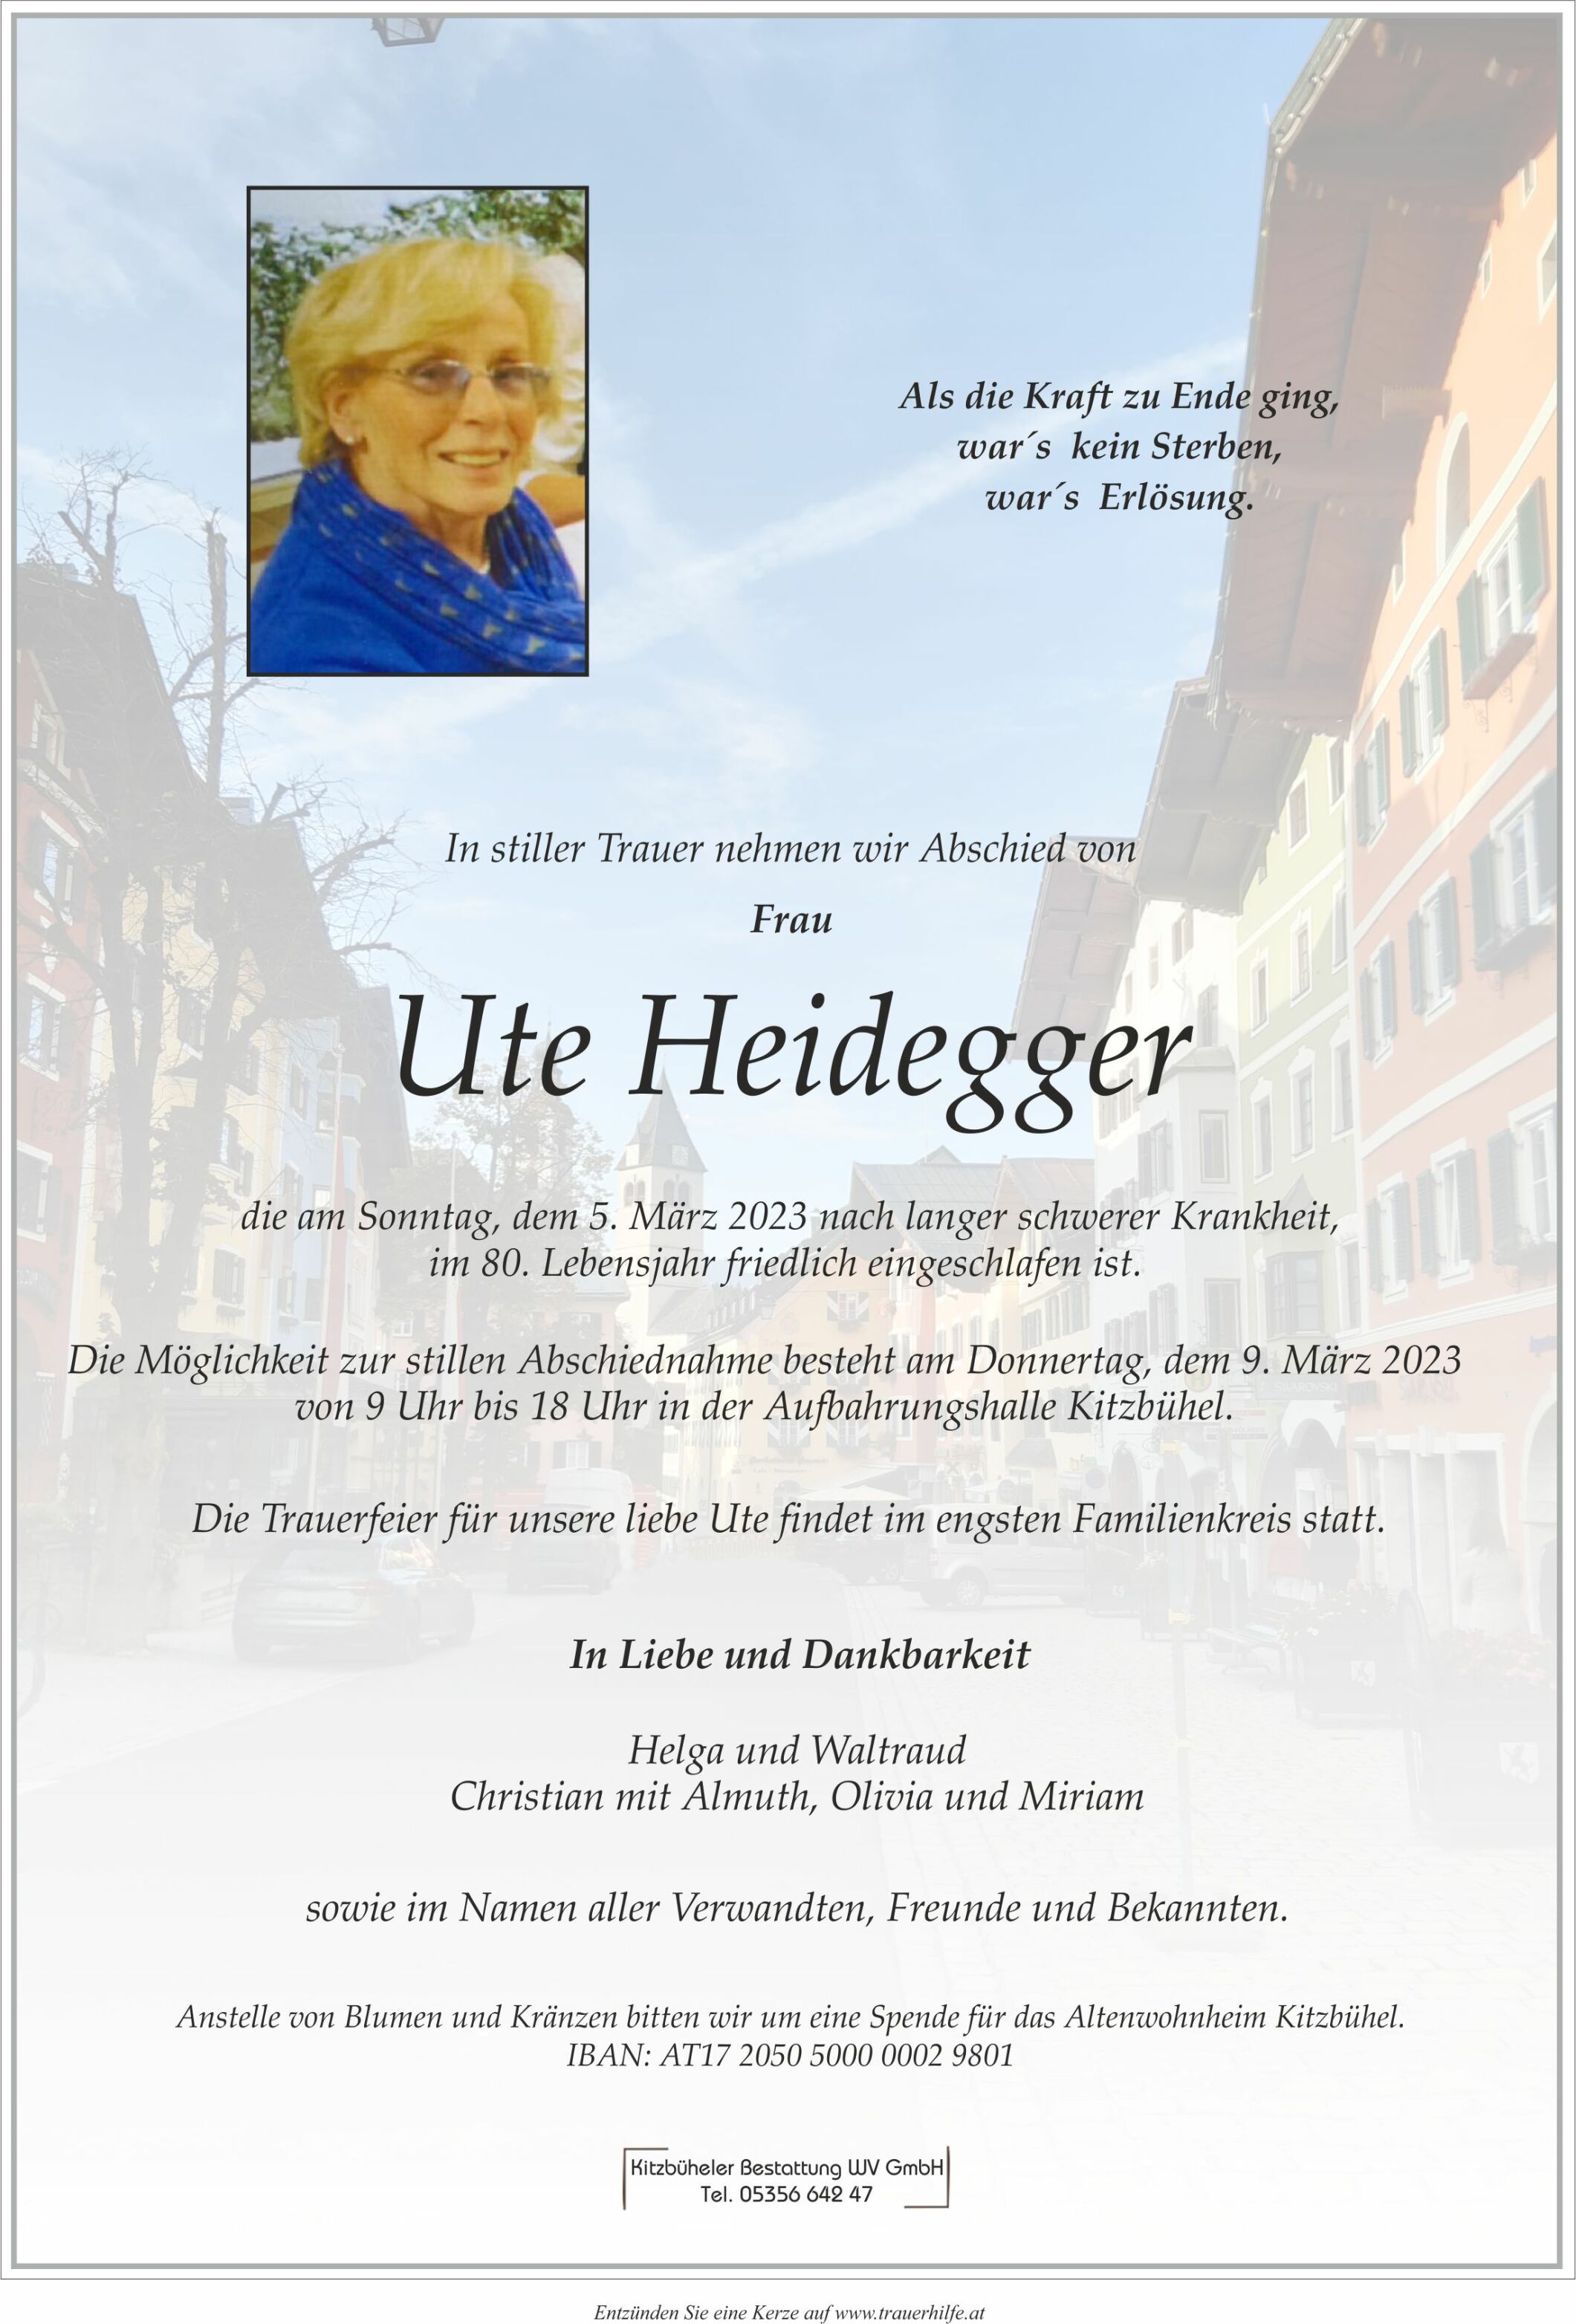 Ute Heidegger